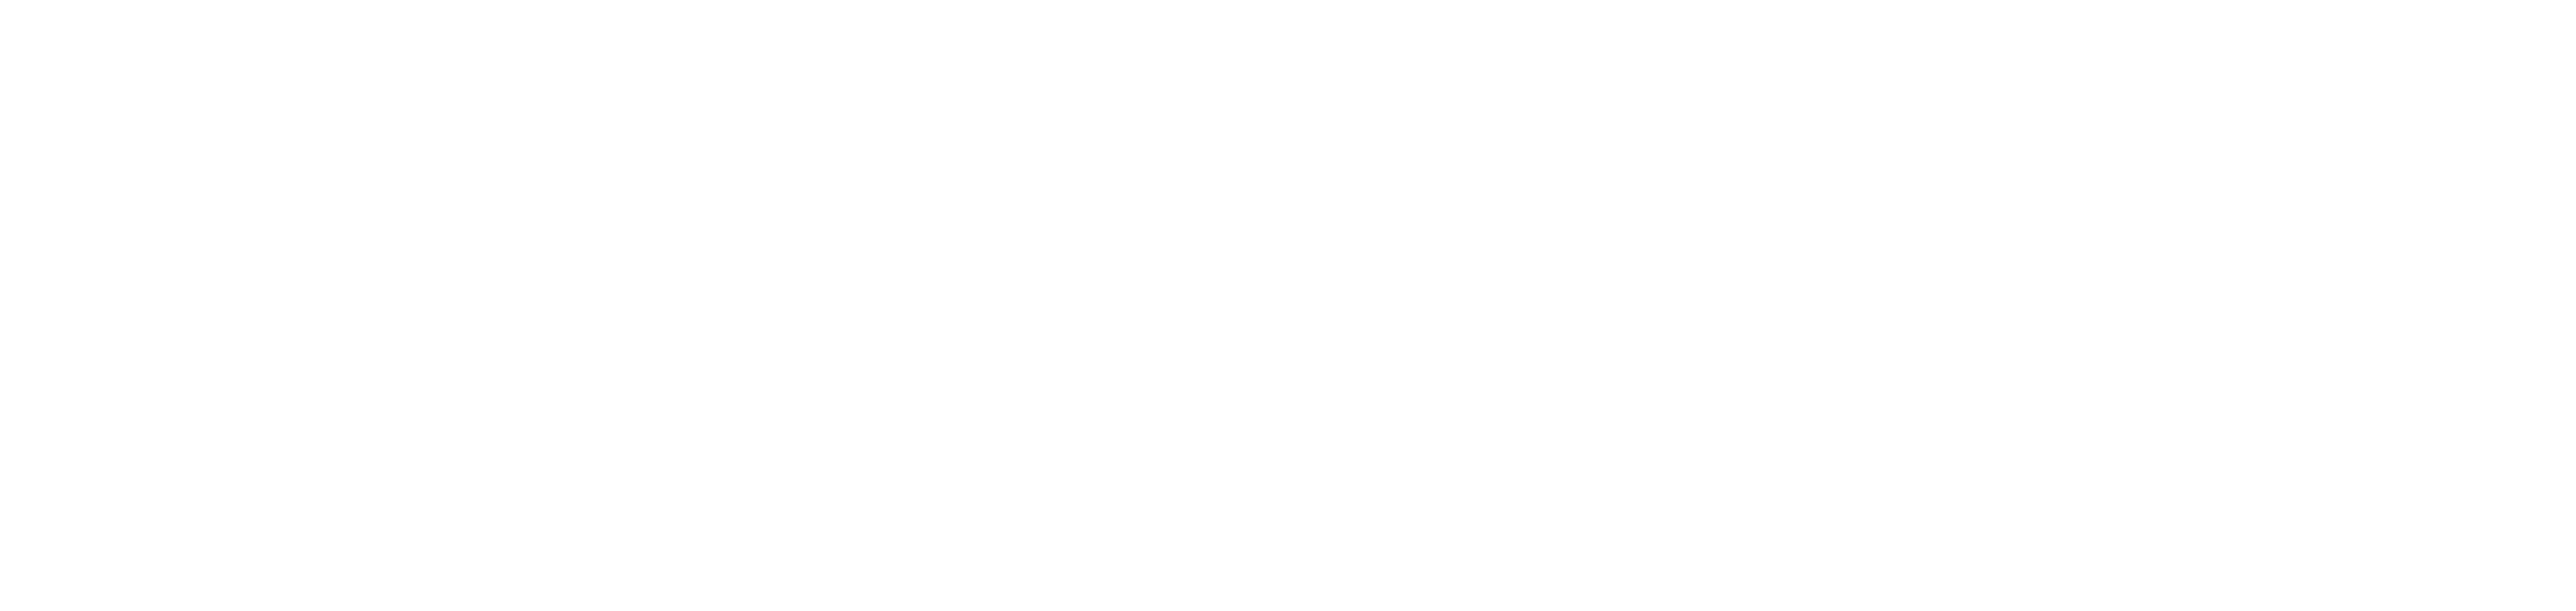 Kilcoy Logo